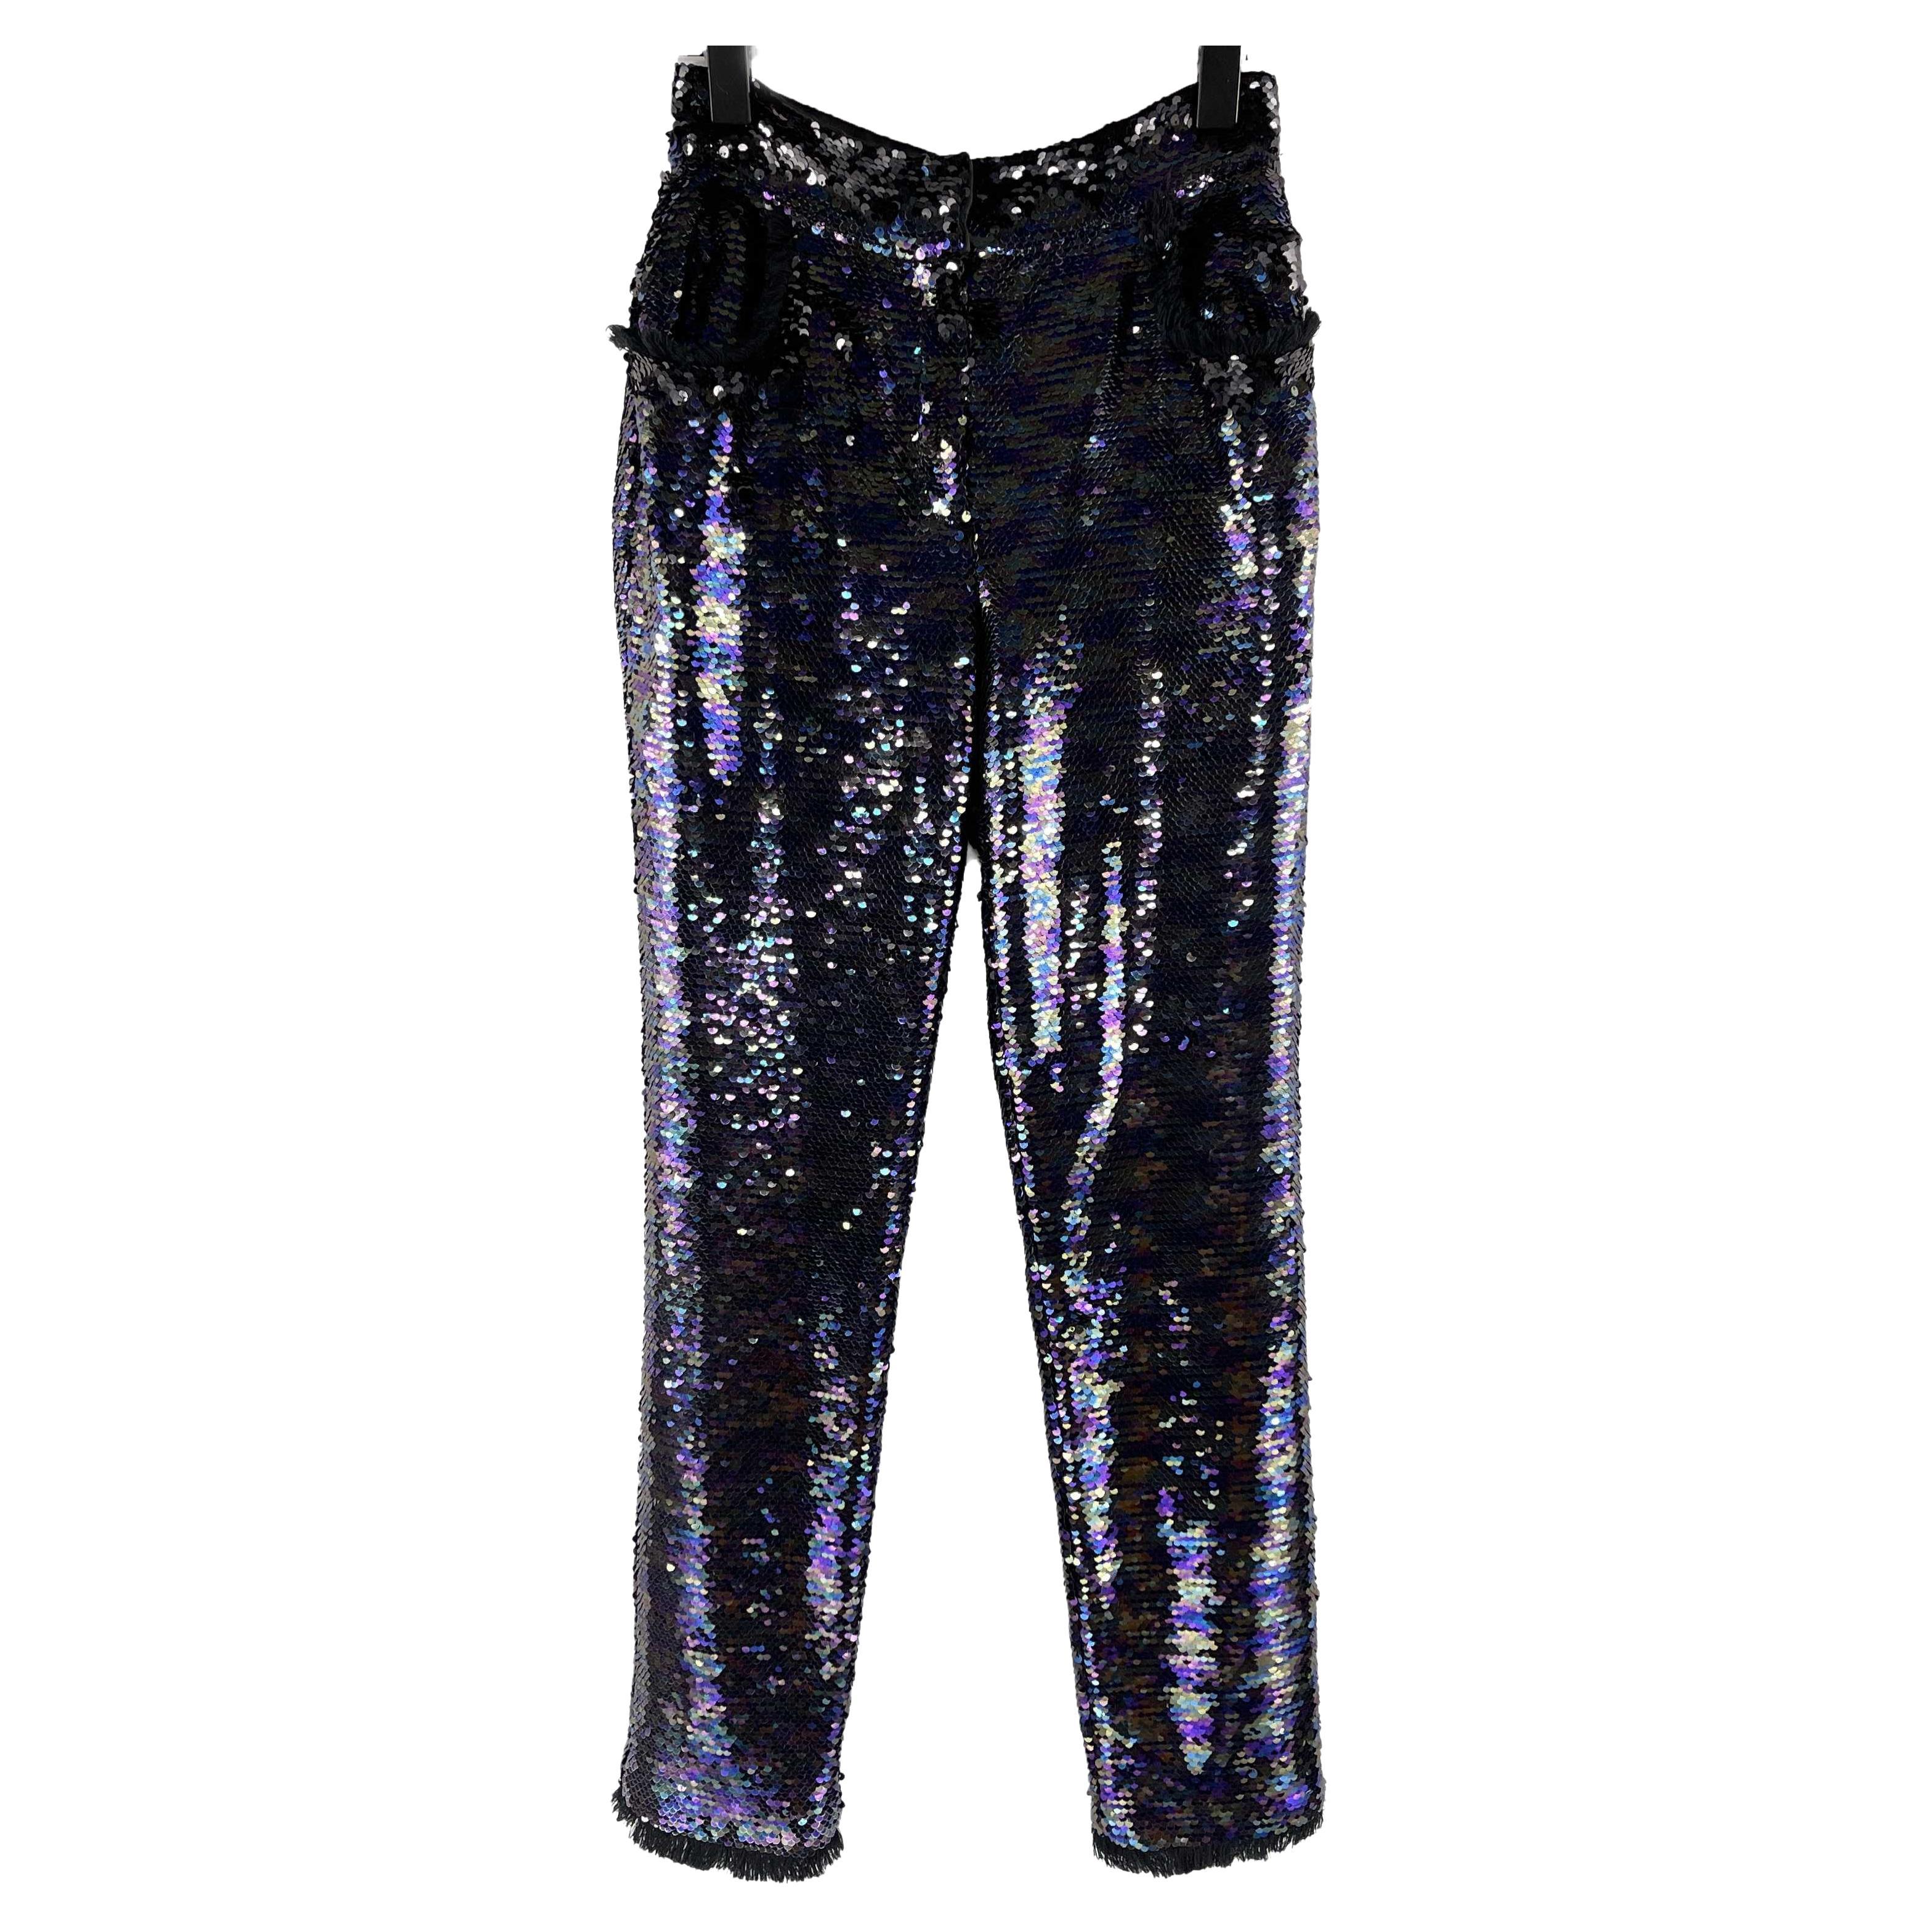 Balmain - Sequin Embellished Fringe Trim Purple Pants - 34 US 4 - NEW For Sale